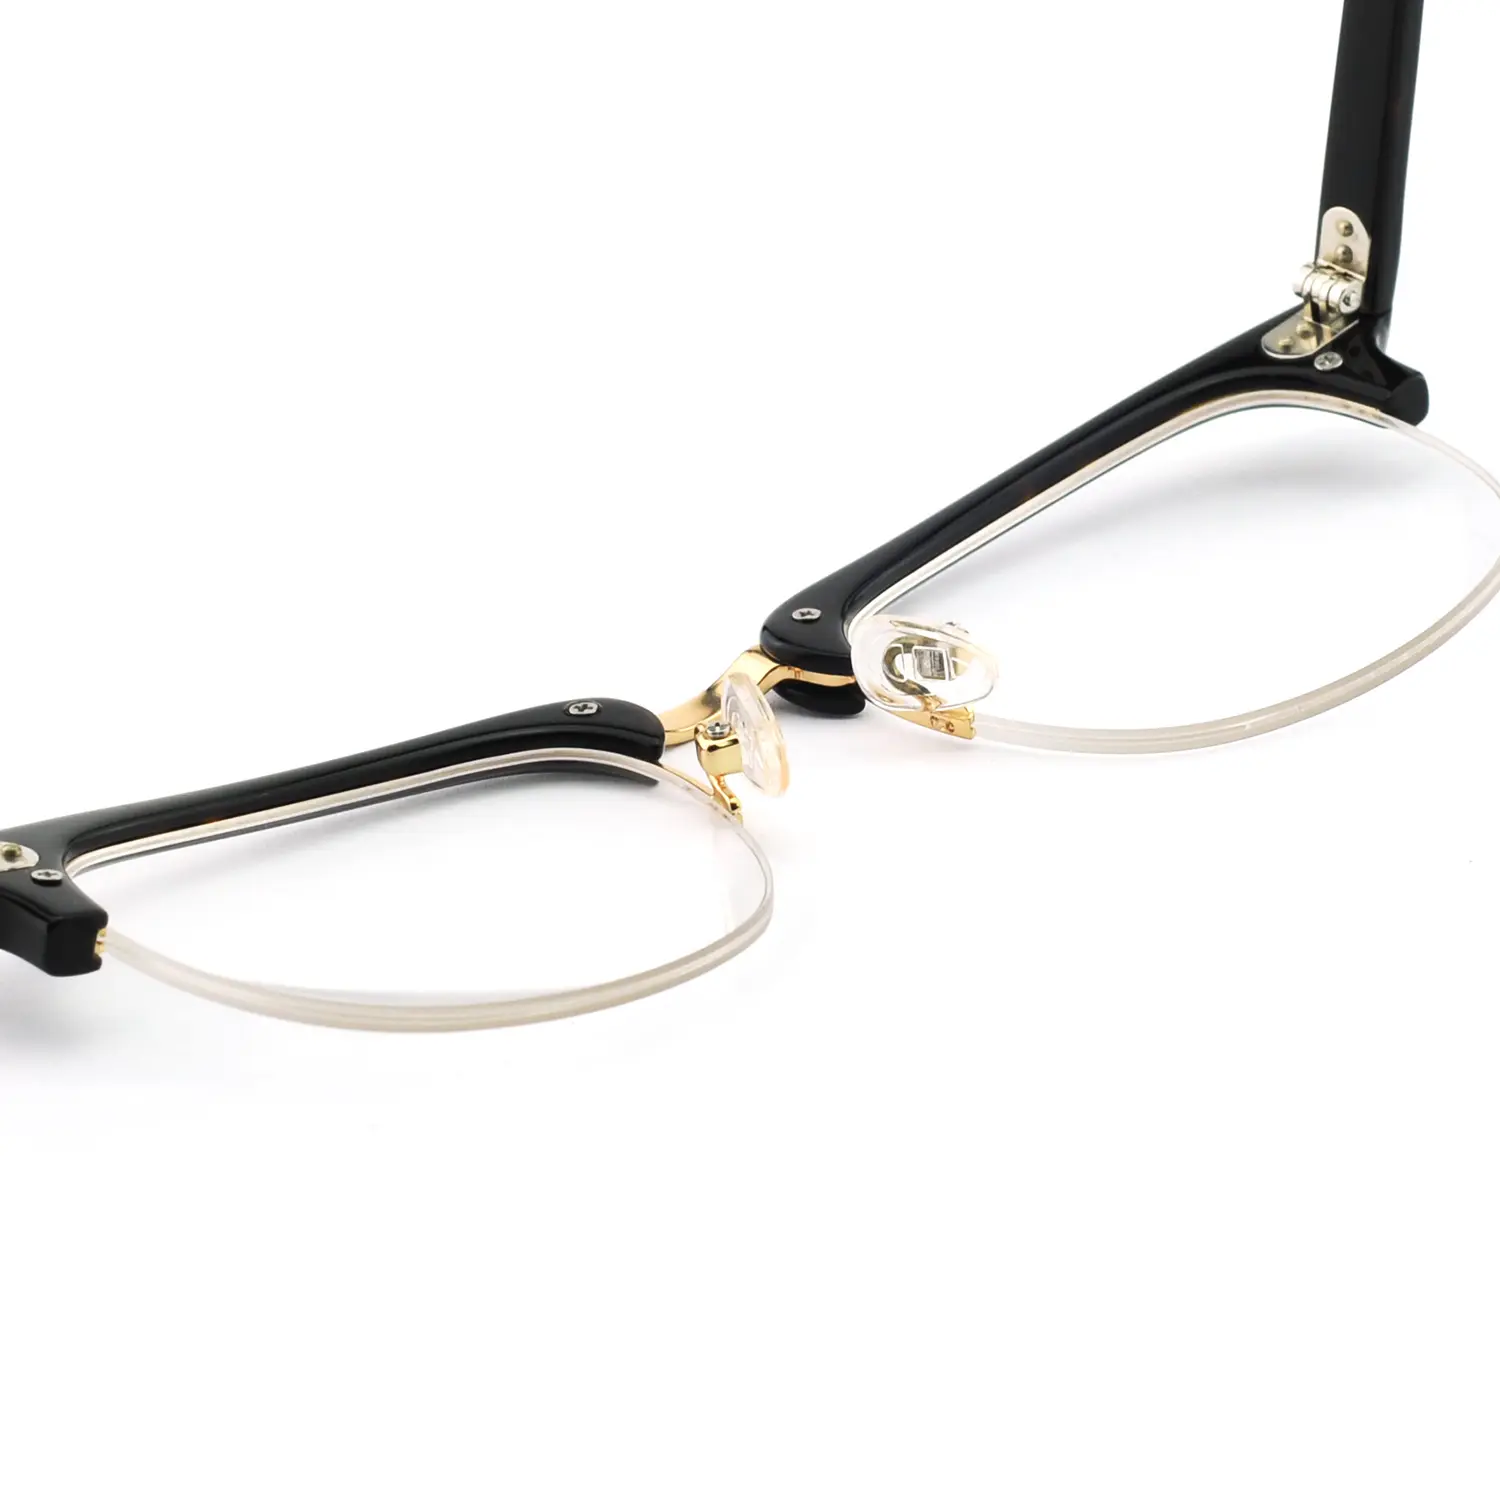 Óculos quadrados sem aro de alta qualidade, óculos com armação de metal, óculos com bloqueio de luz azul